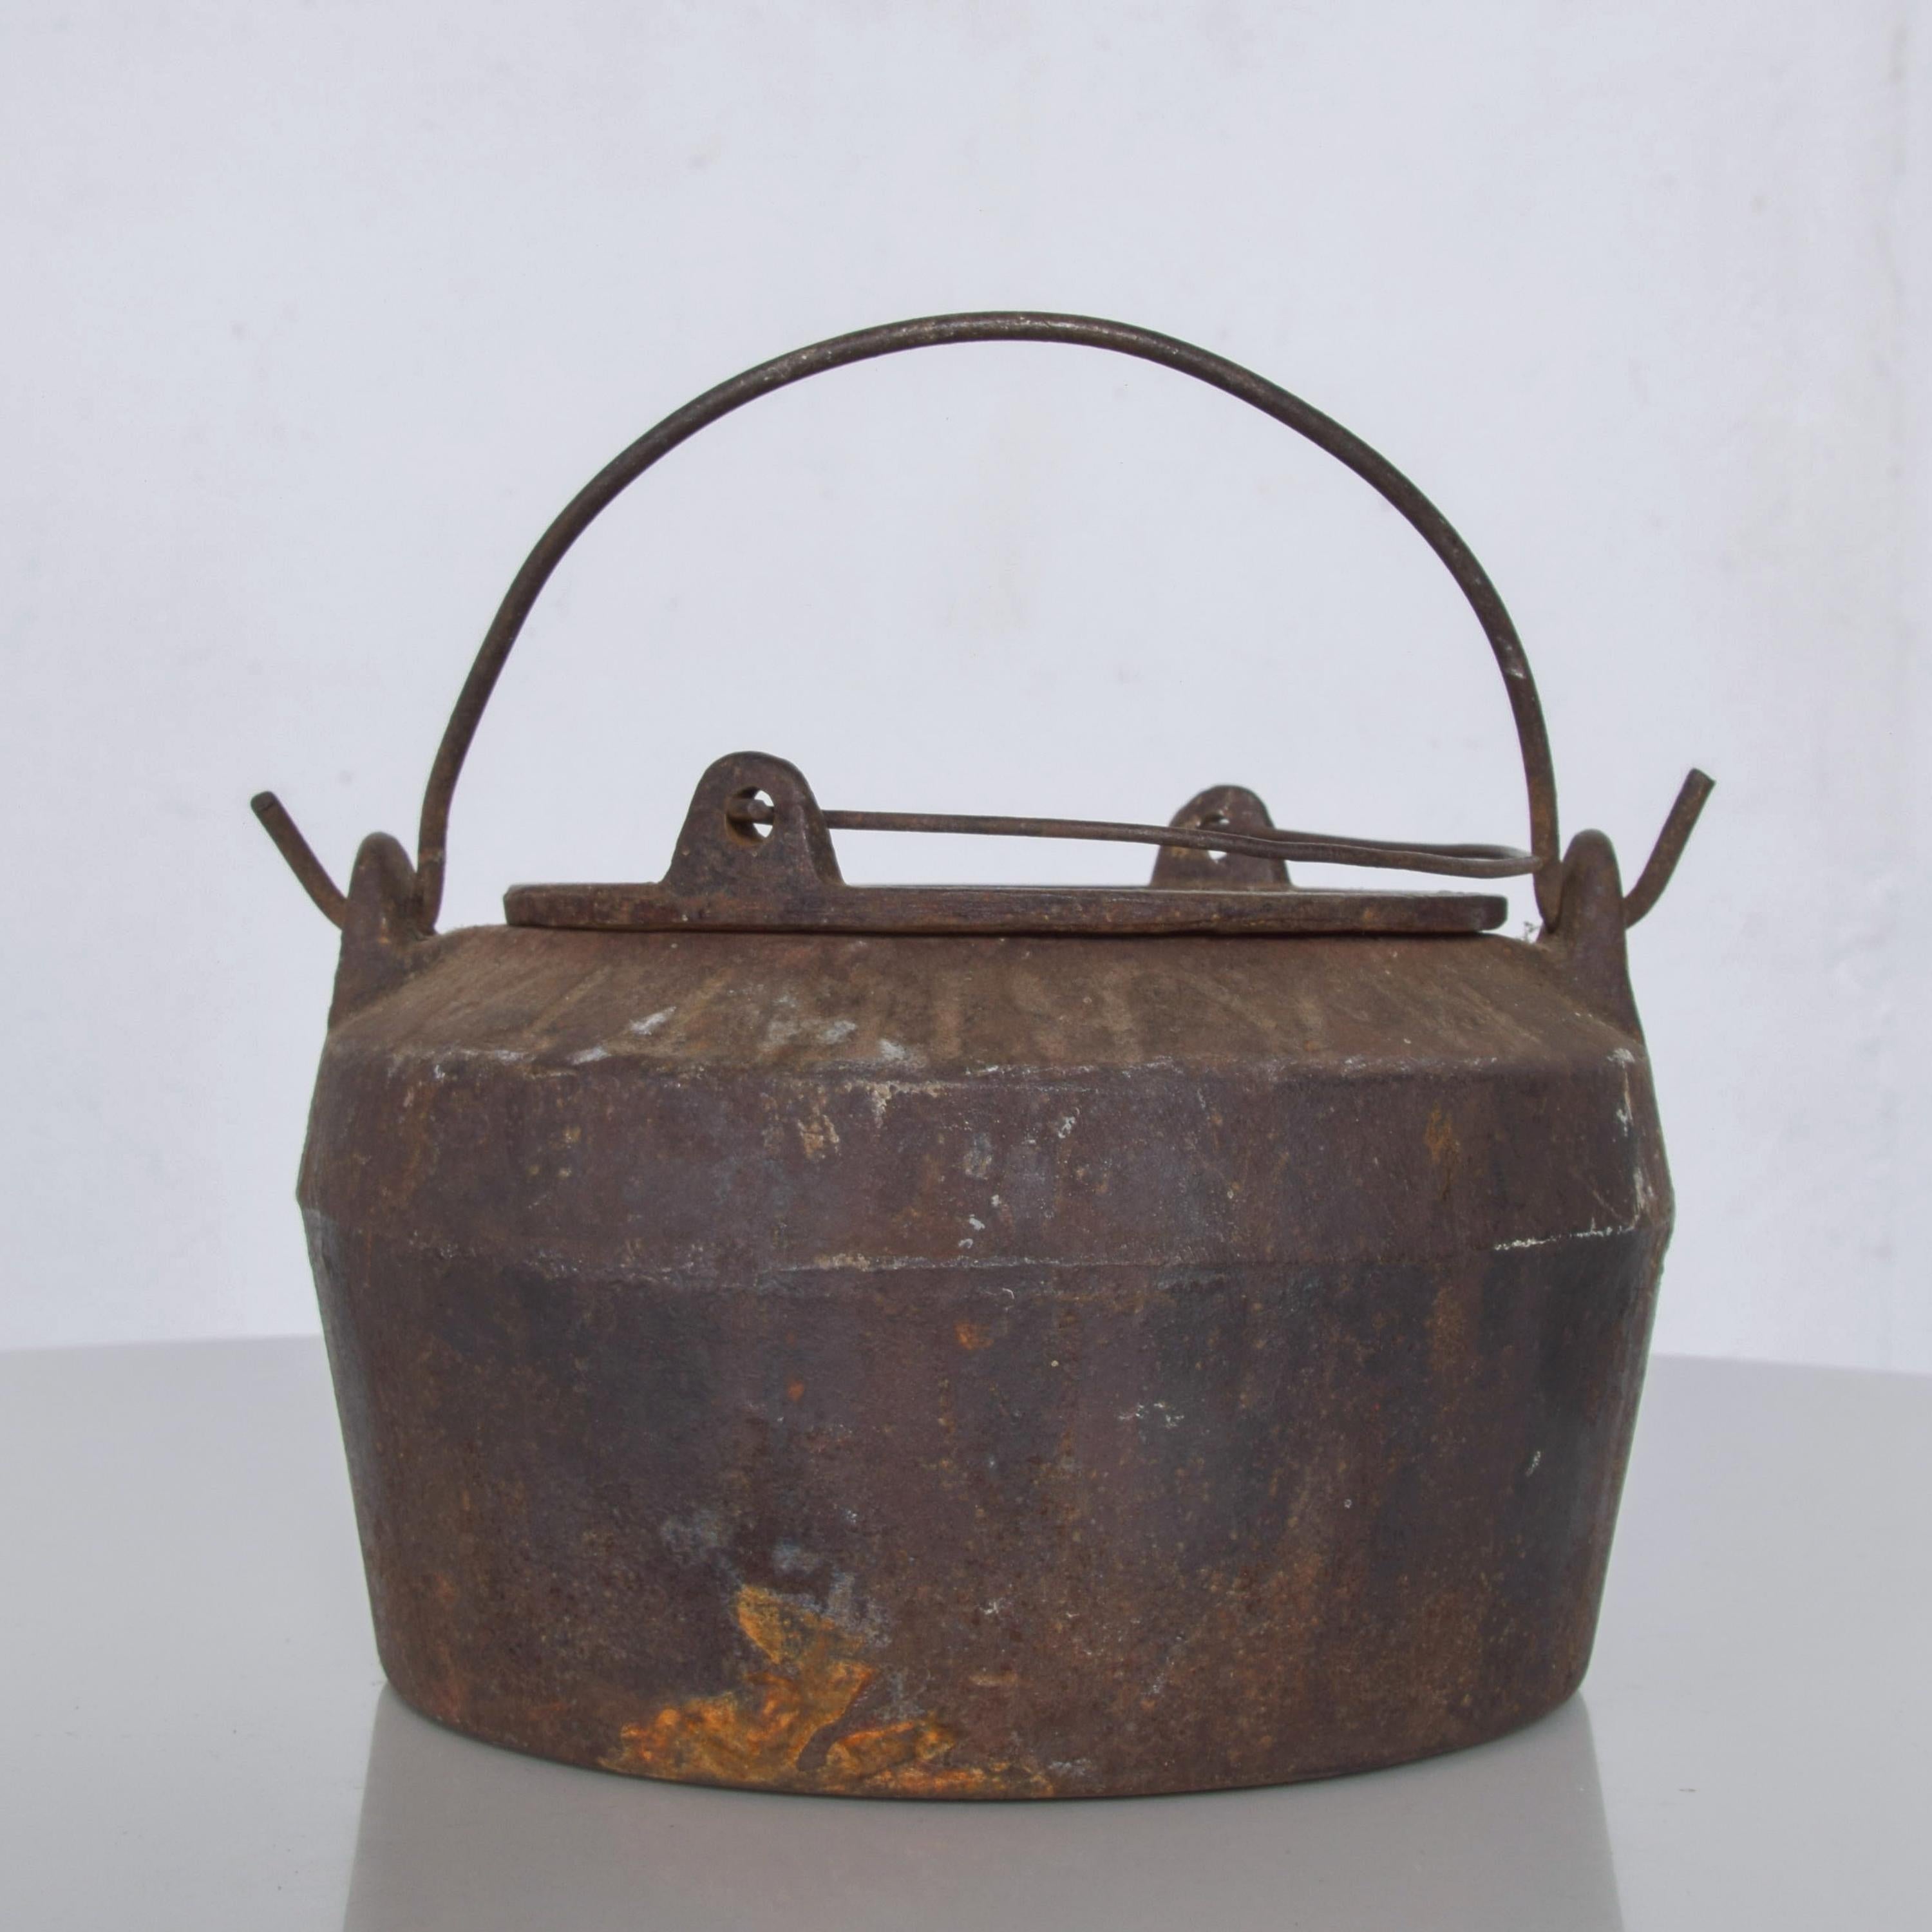 Gießerei Schmelztöpfe Antik Industriell Patiniert Rustikaler Zustand mit Metall Handtrage (2 Topf Set)
Vintage Cauldron. Wunderbares industrielles Dekor.
Maße: 5,5